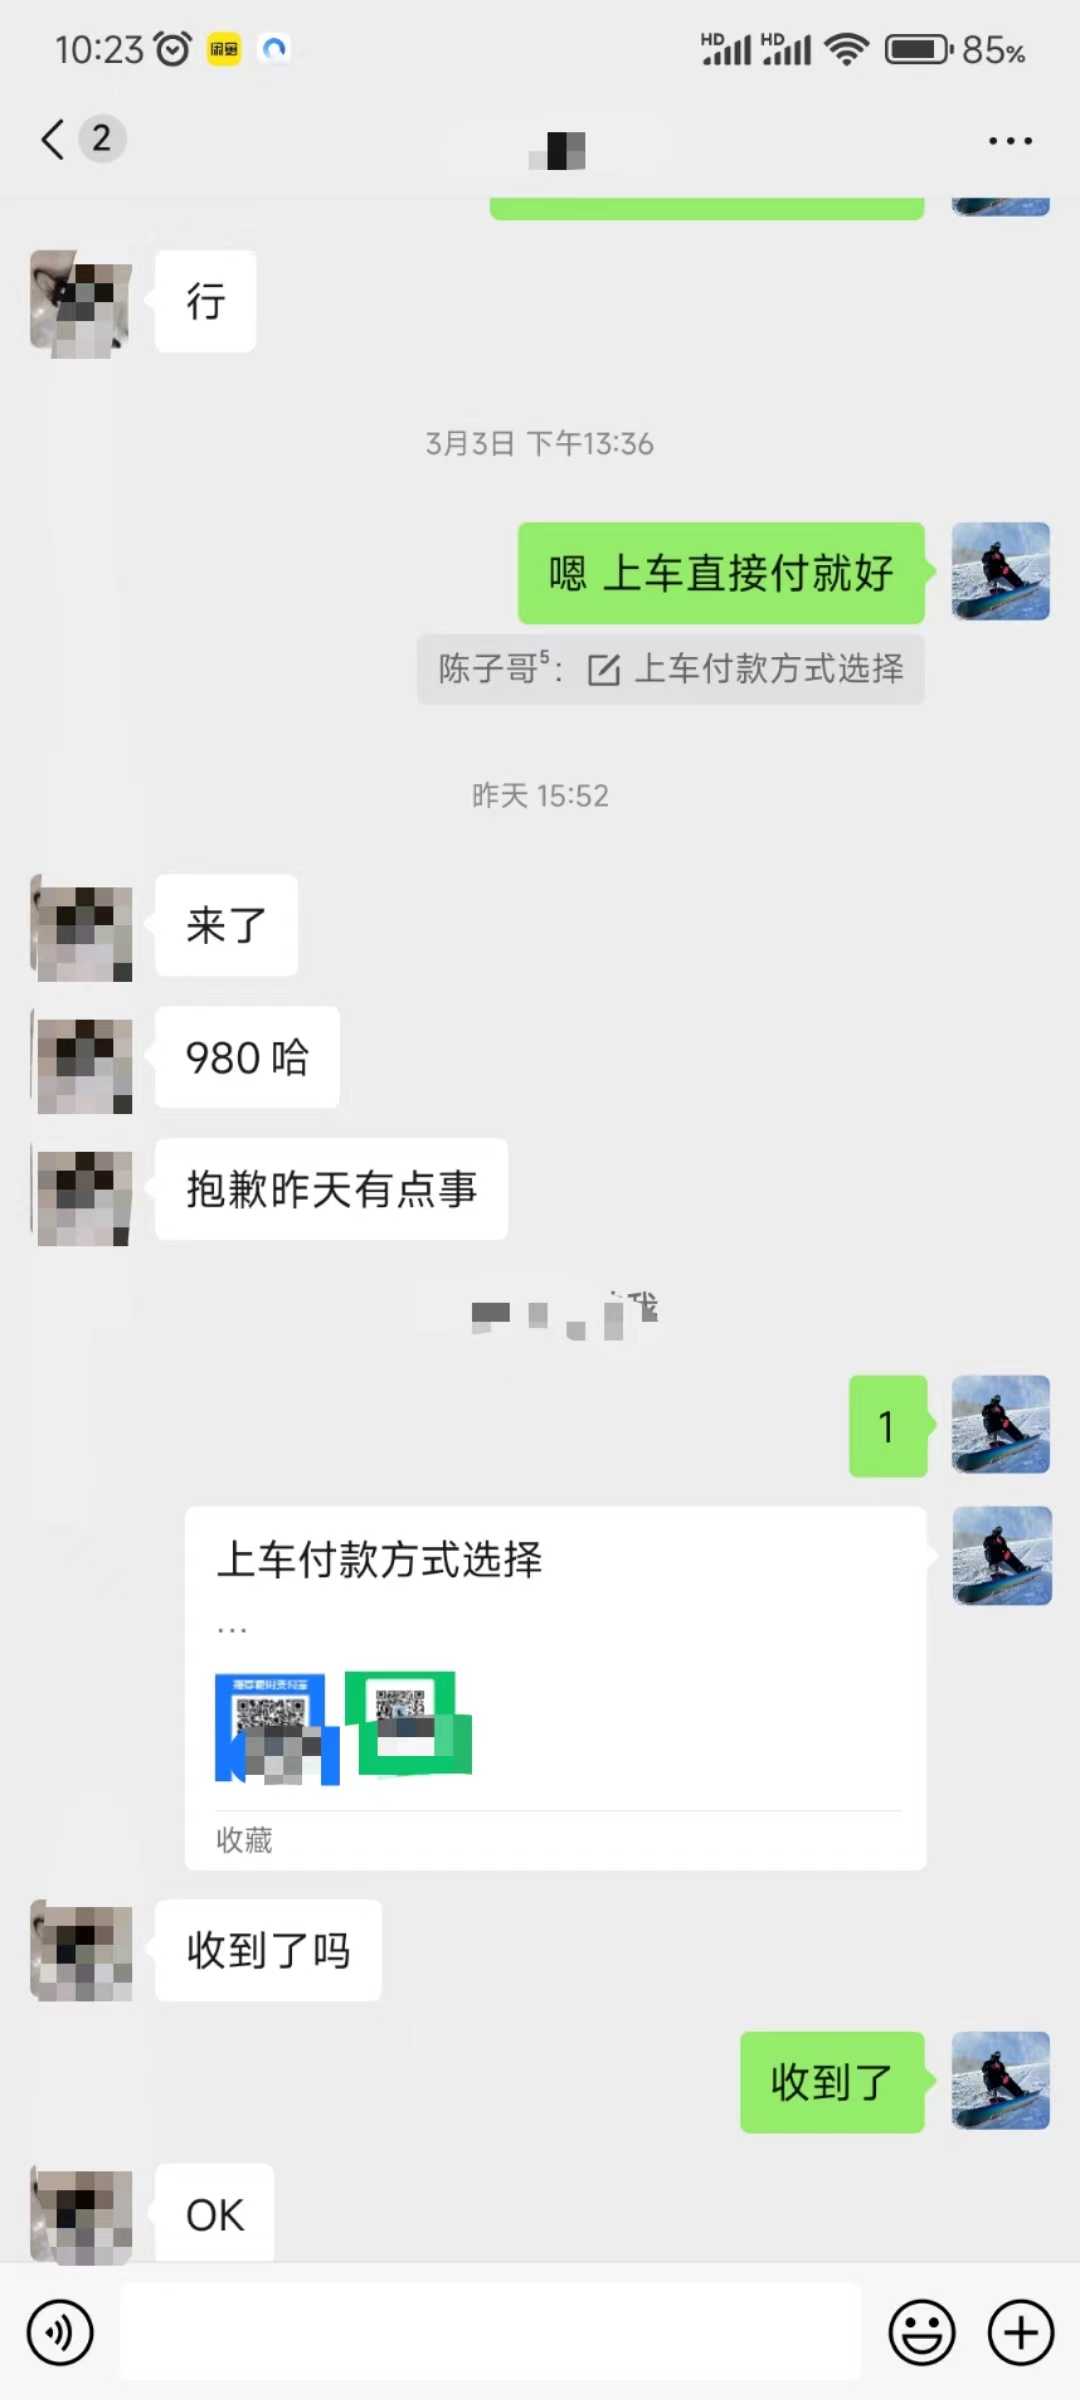 QQ无人直播 新赛道新玩法 一天轻松500+ 腾讯官方流量扶持 随便写写 第2张